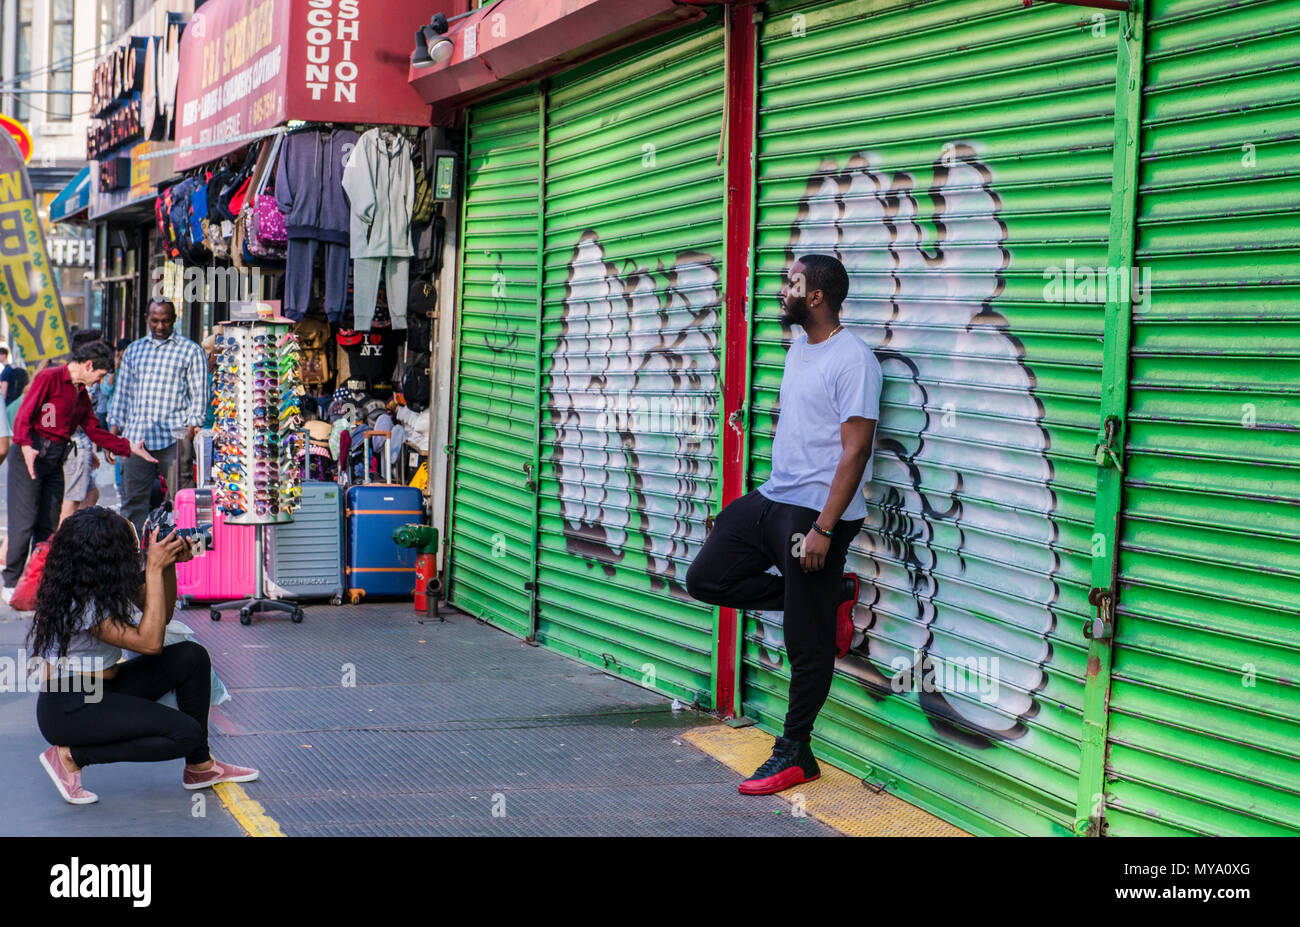 Uomo appoggiato a coperto di graffiti serranda metallica, in posa per il fotografo, New York City, Stati Uniti d'America Foto Stock